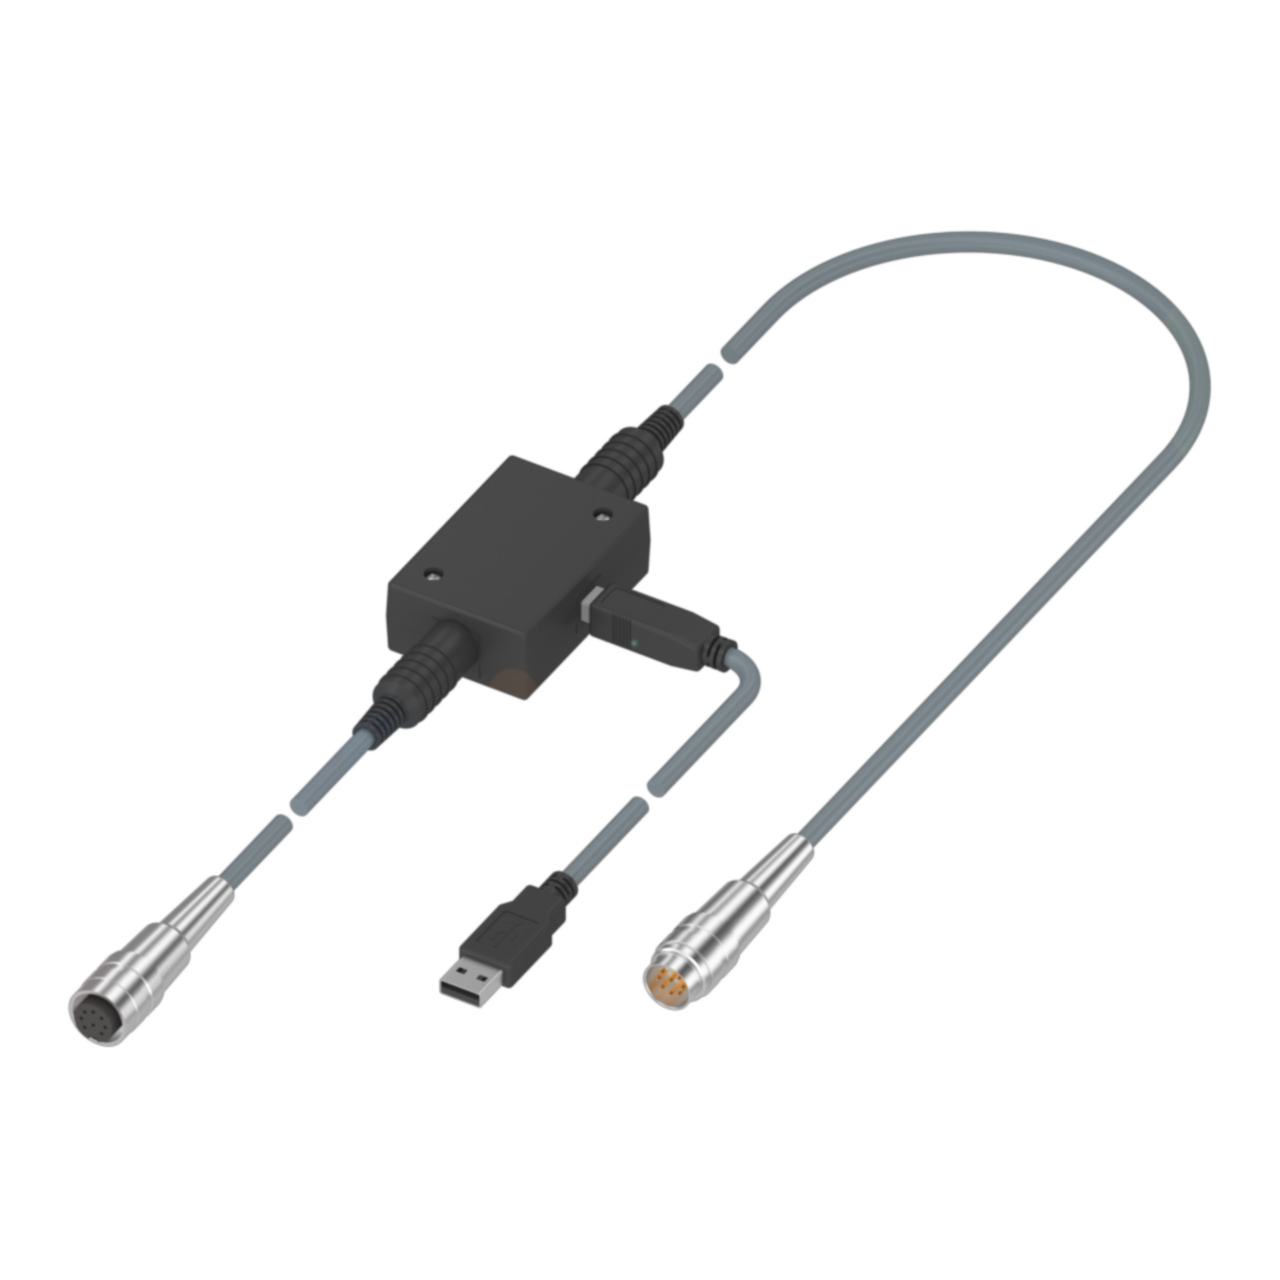 BTL7-A-CB01-USB-S32